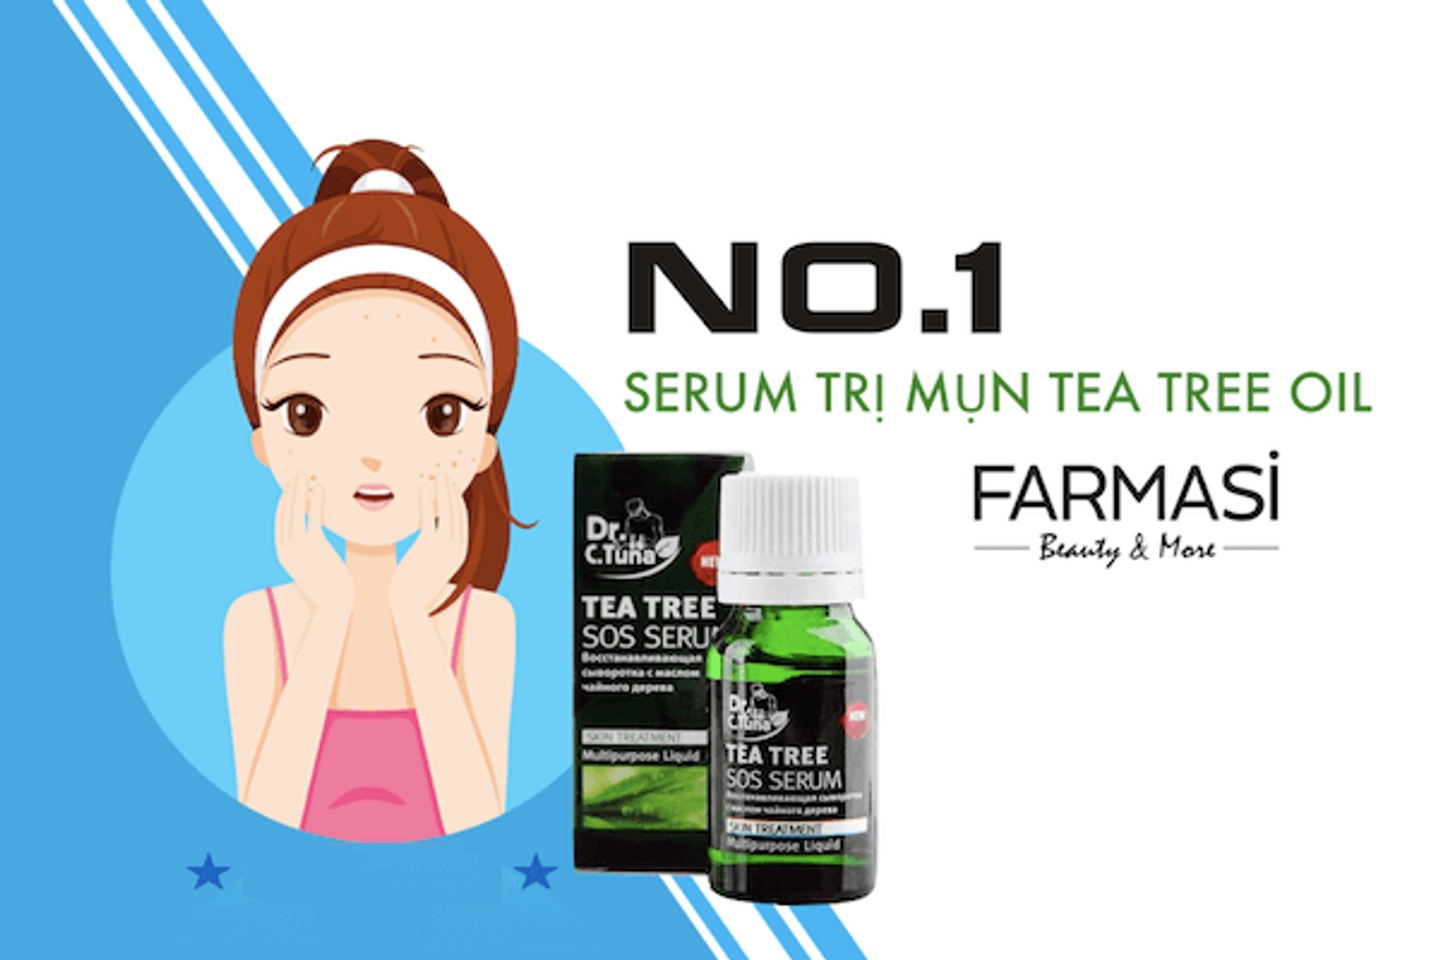 Serum trị mụn cấp tốc Farmasi Dr. C.Tuna Tea Tree SOS